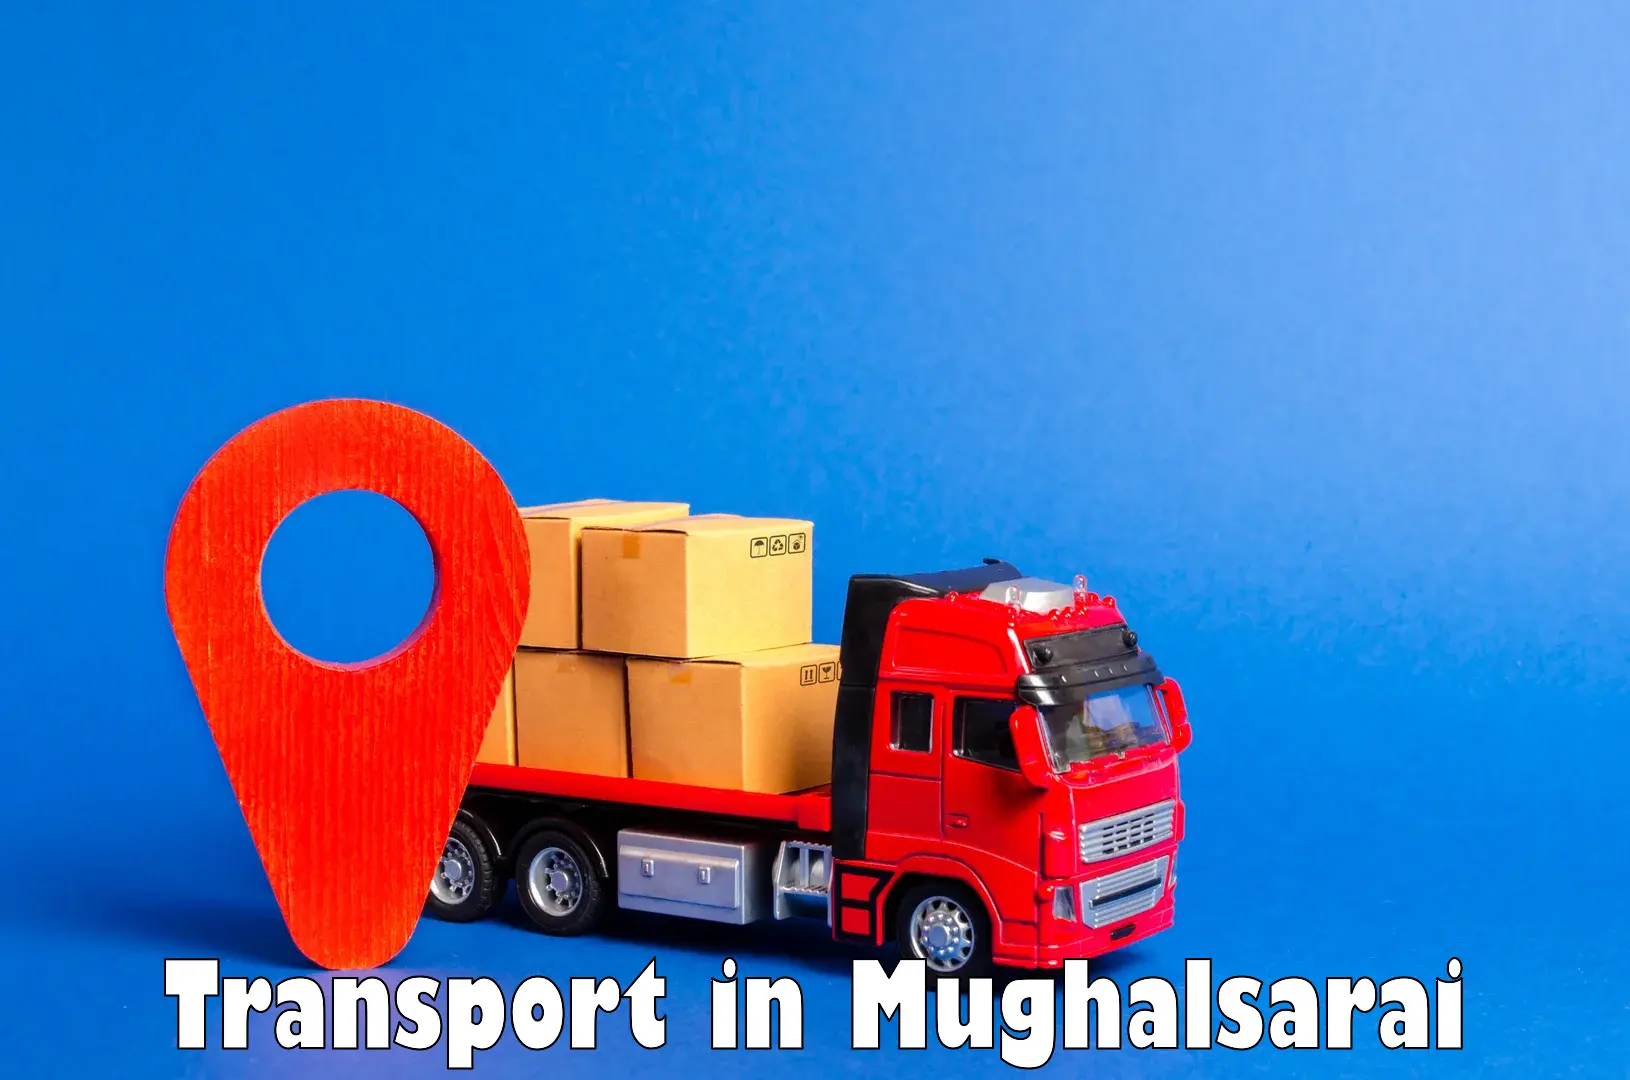 Interstate goods transport in Mughalsarai